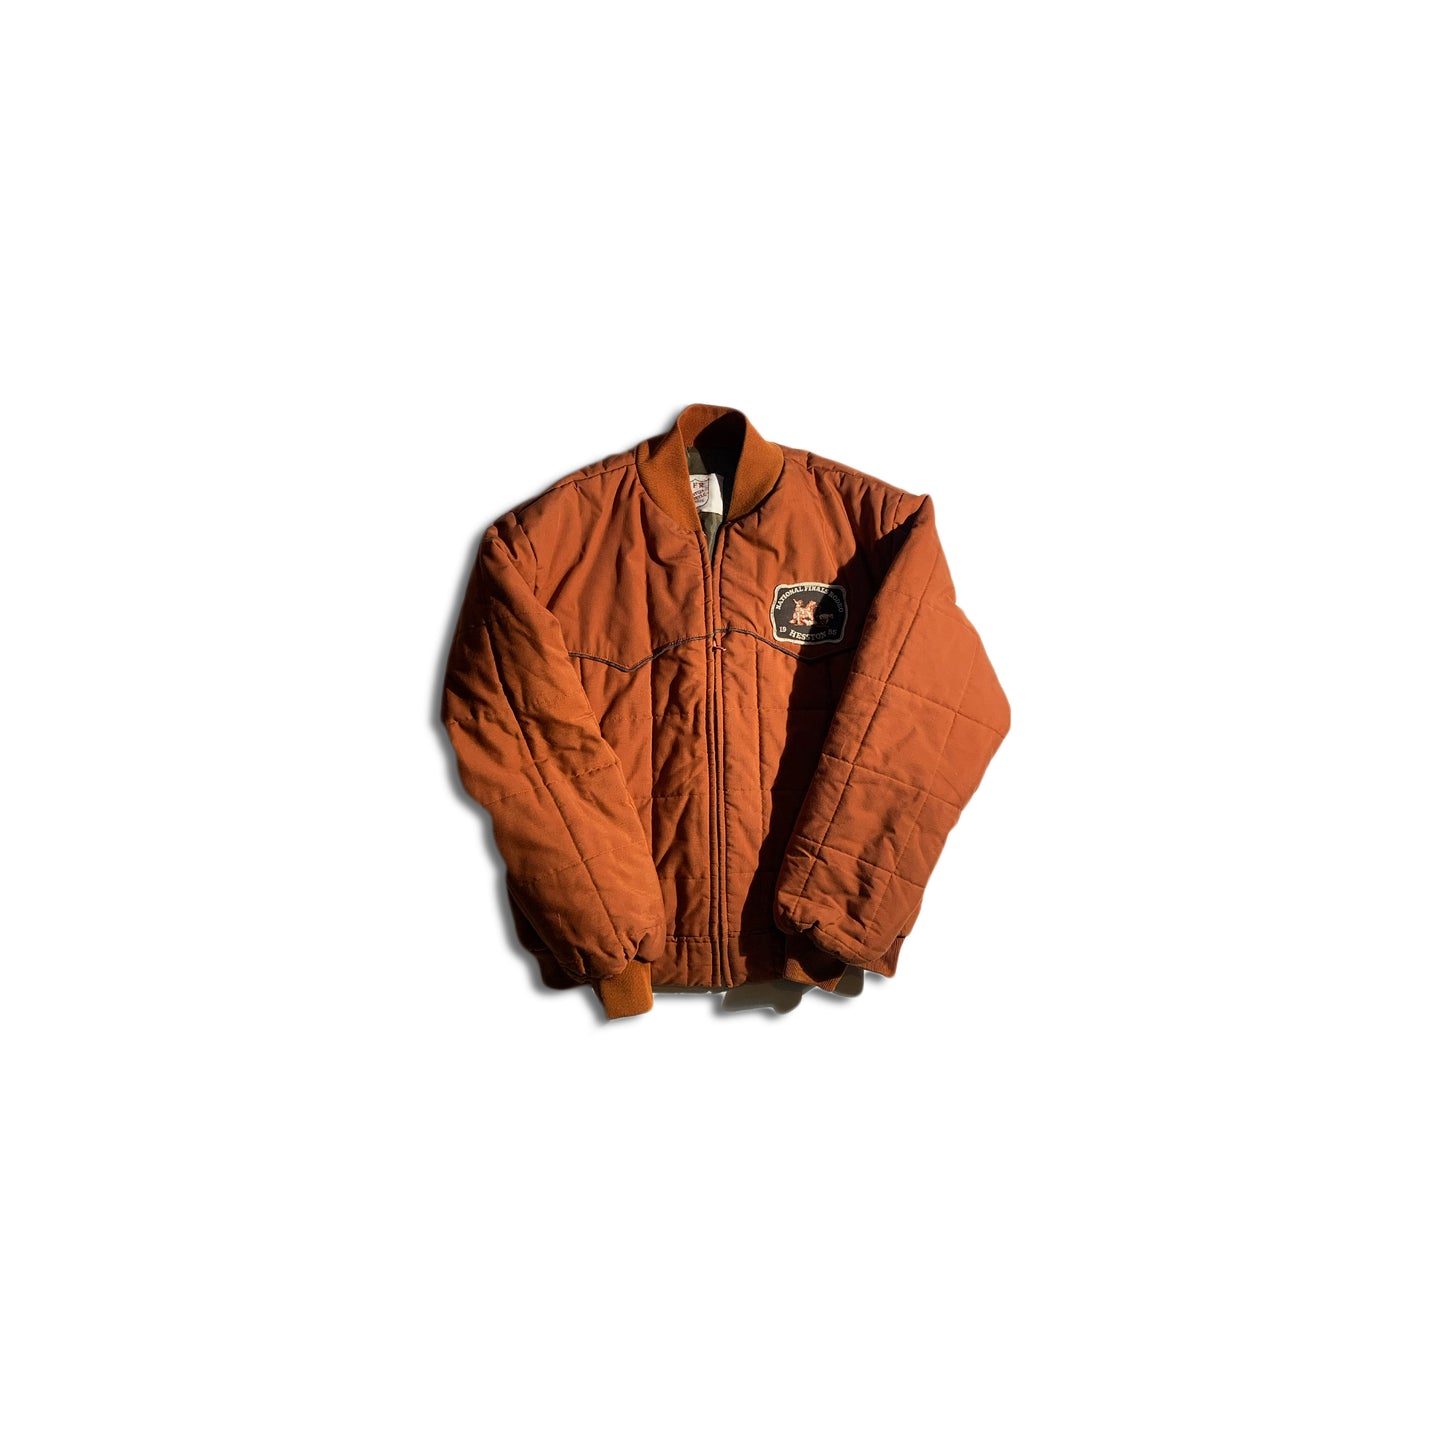 Vintage Western Style Brown Bomber Jacket